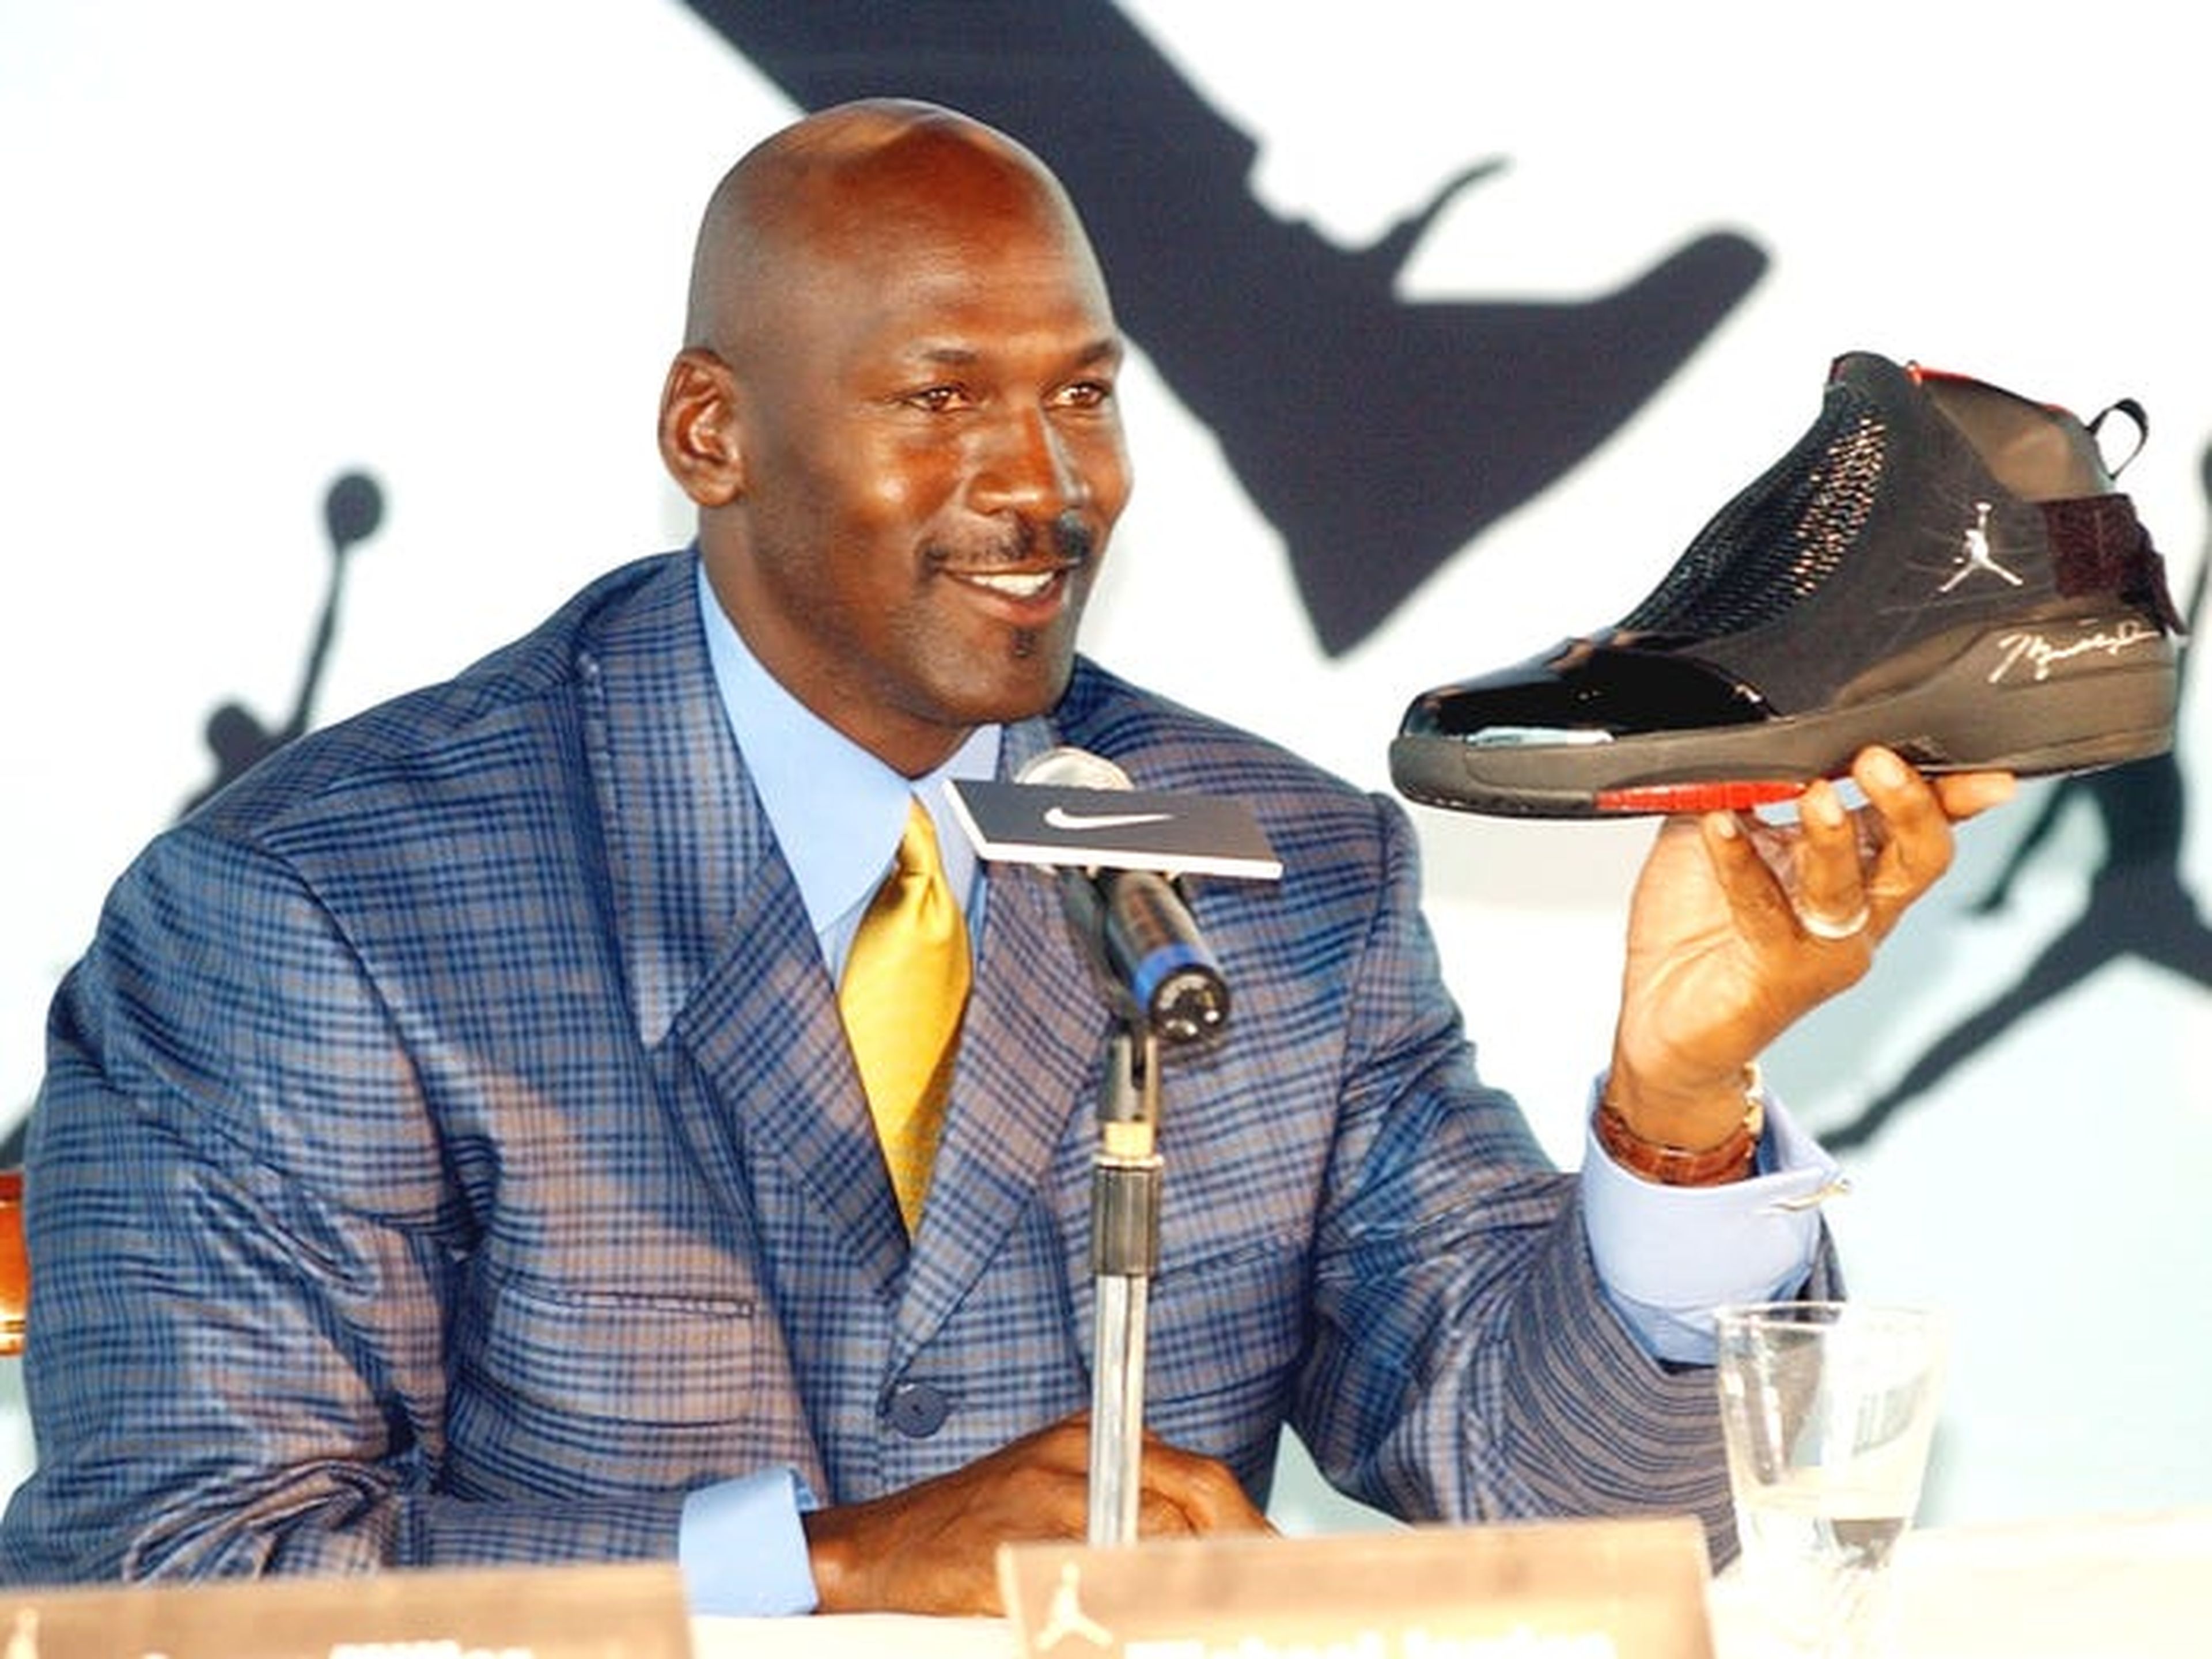 La leyenda de la NBA Michael Jordan sostiene una zapatilla AJ19 autografiado, el último diseño de la línea Air Jordan, en una conferencia de prensa en Hong Kong.